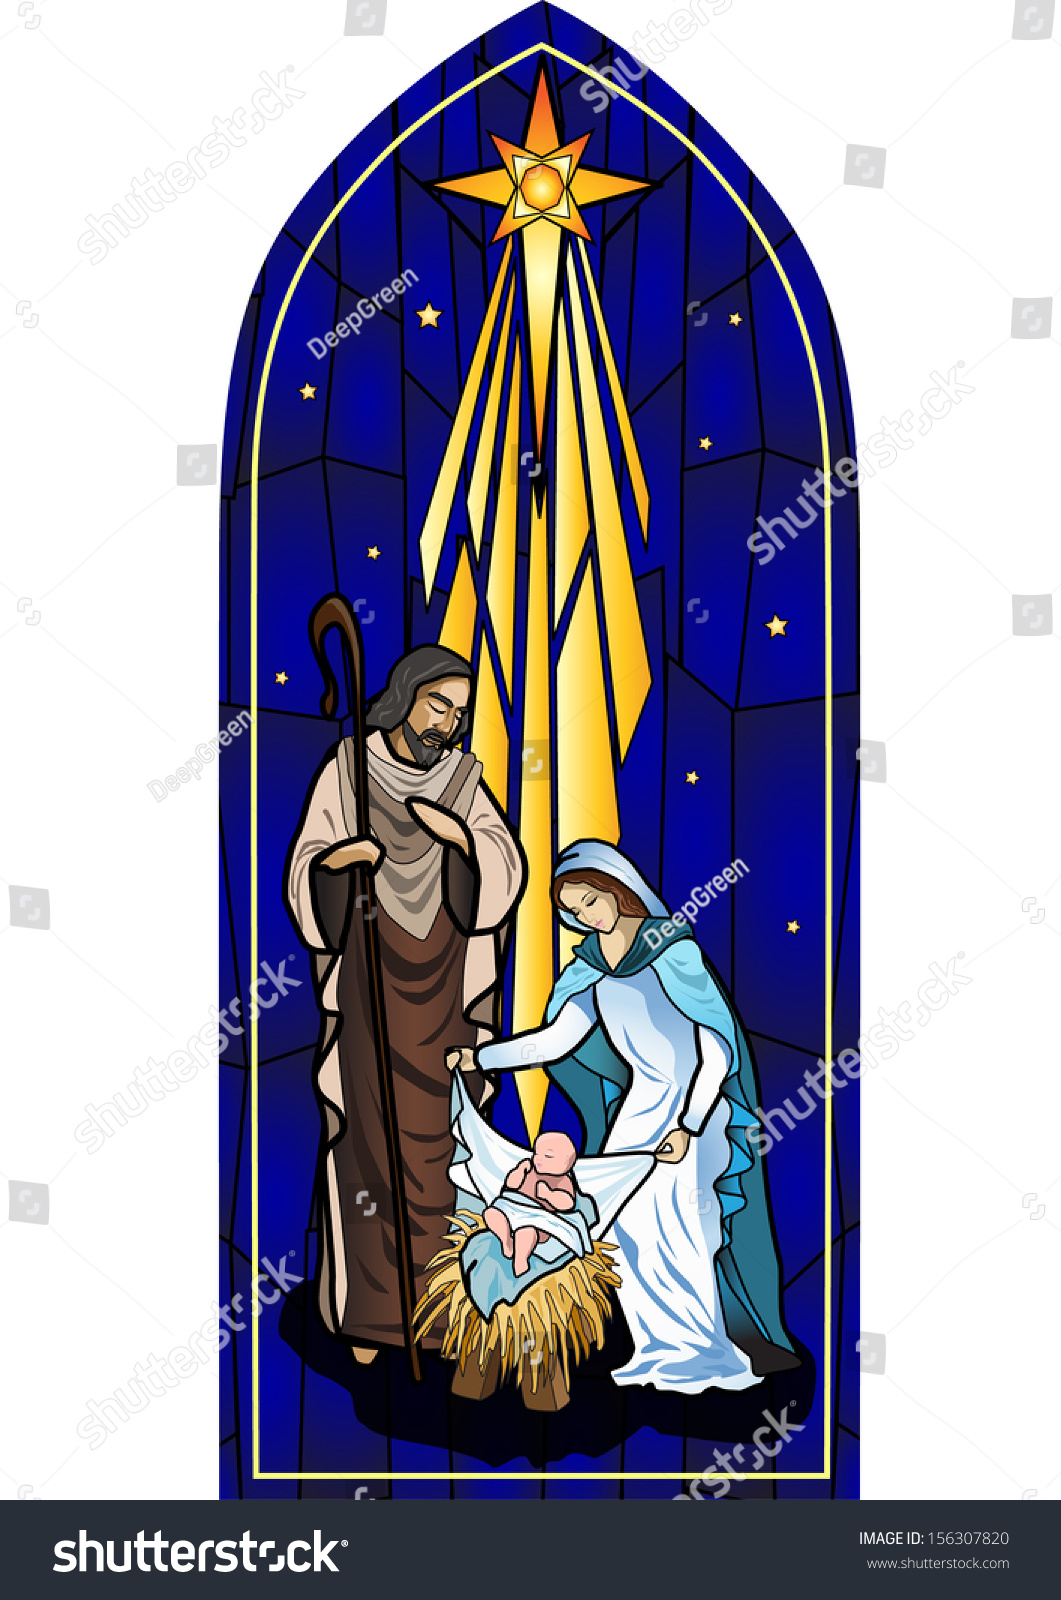 clipart holy family nativity - photo #27